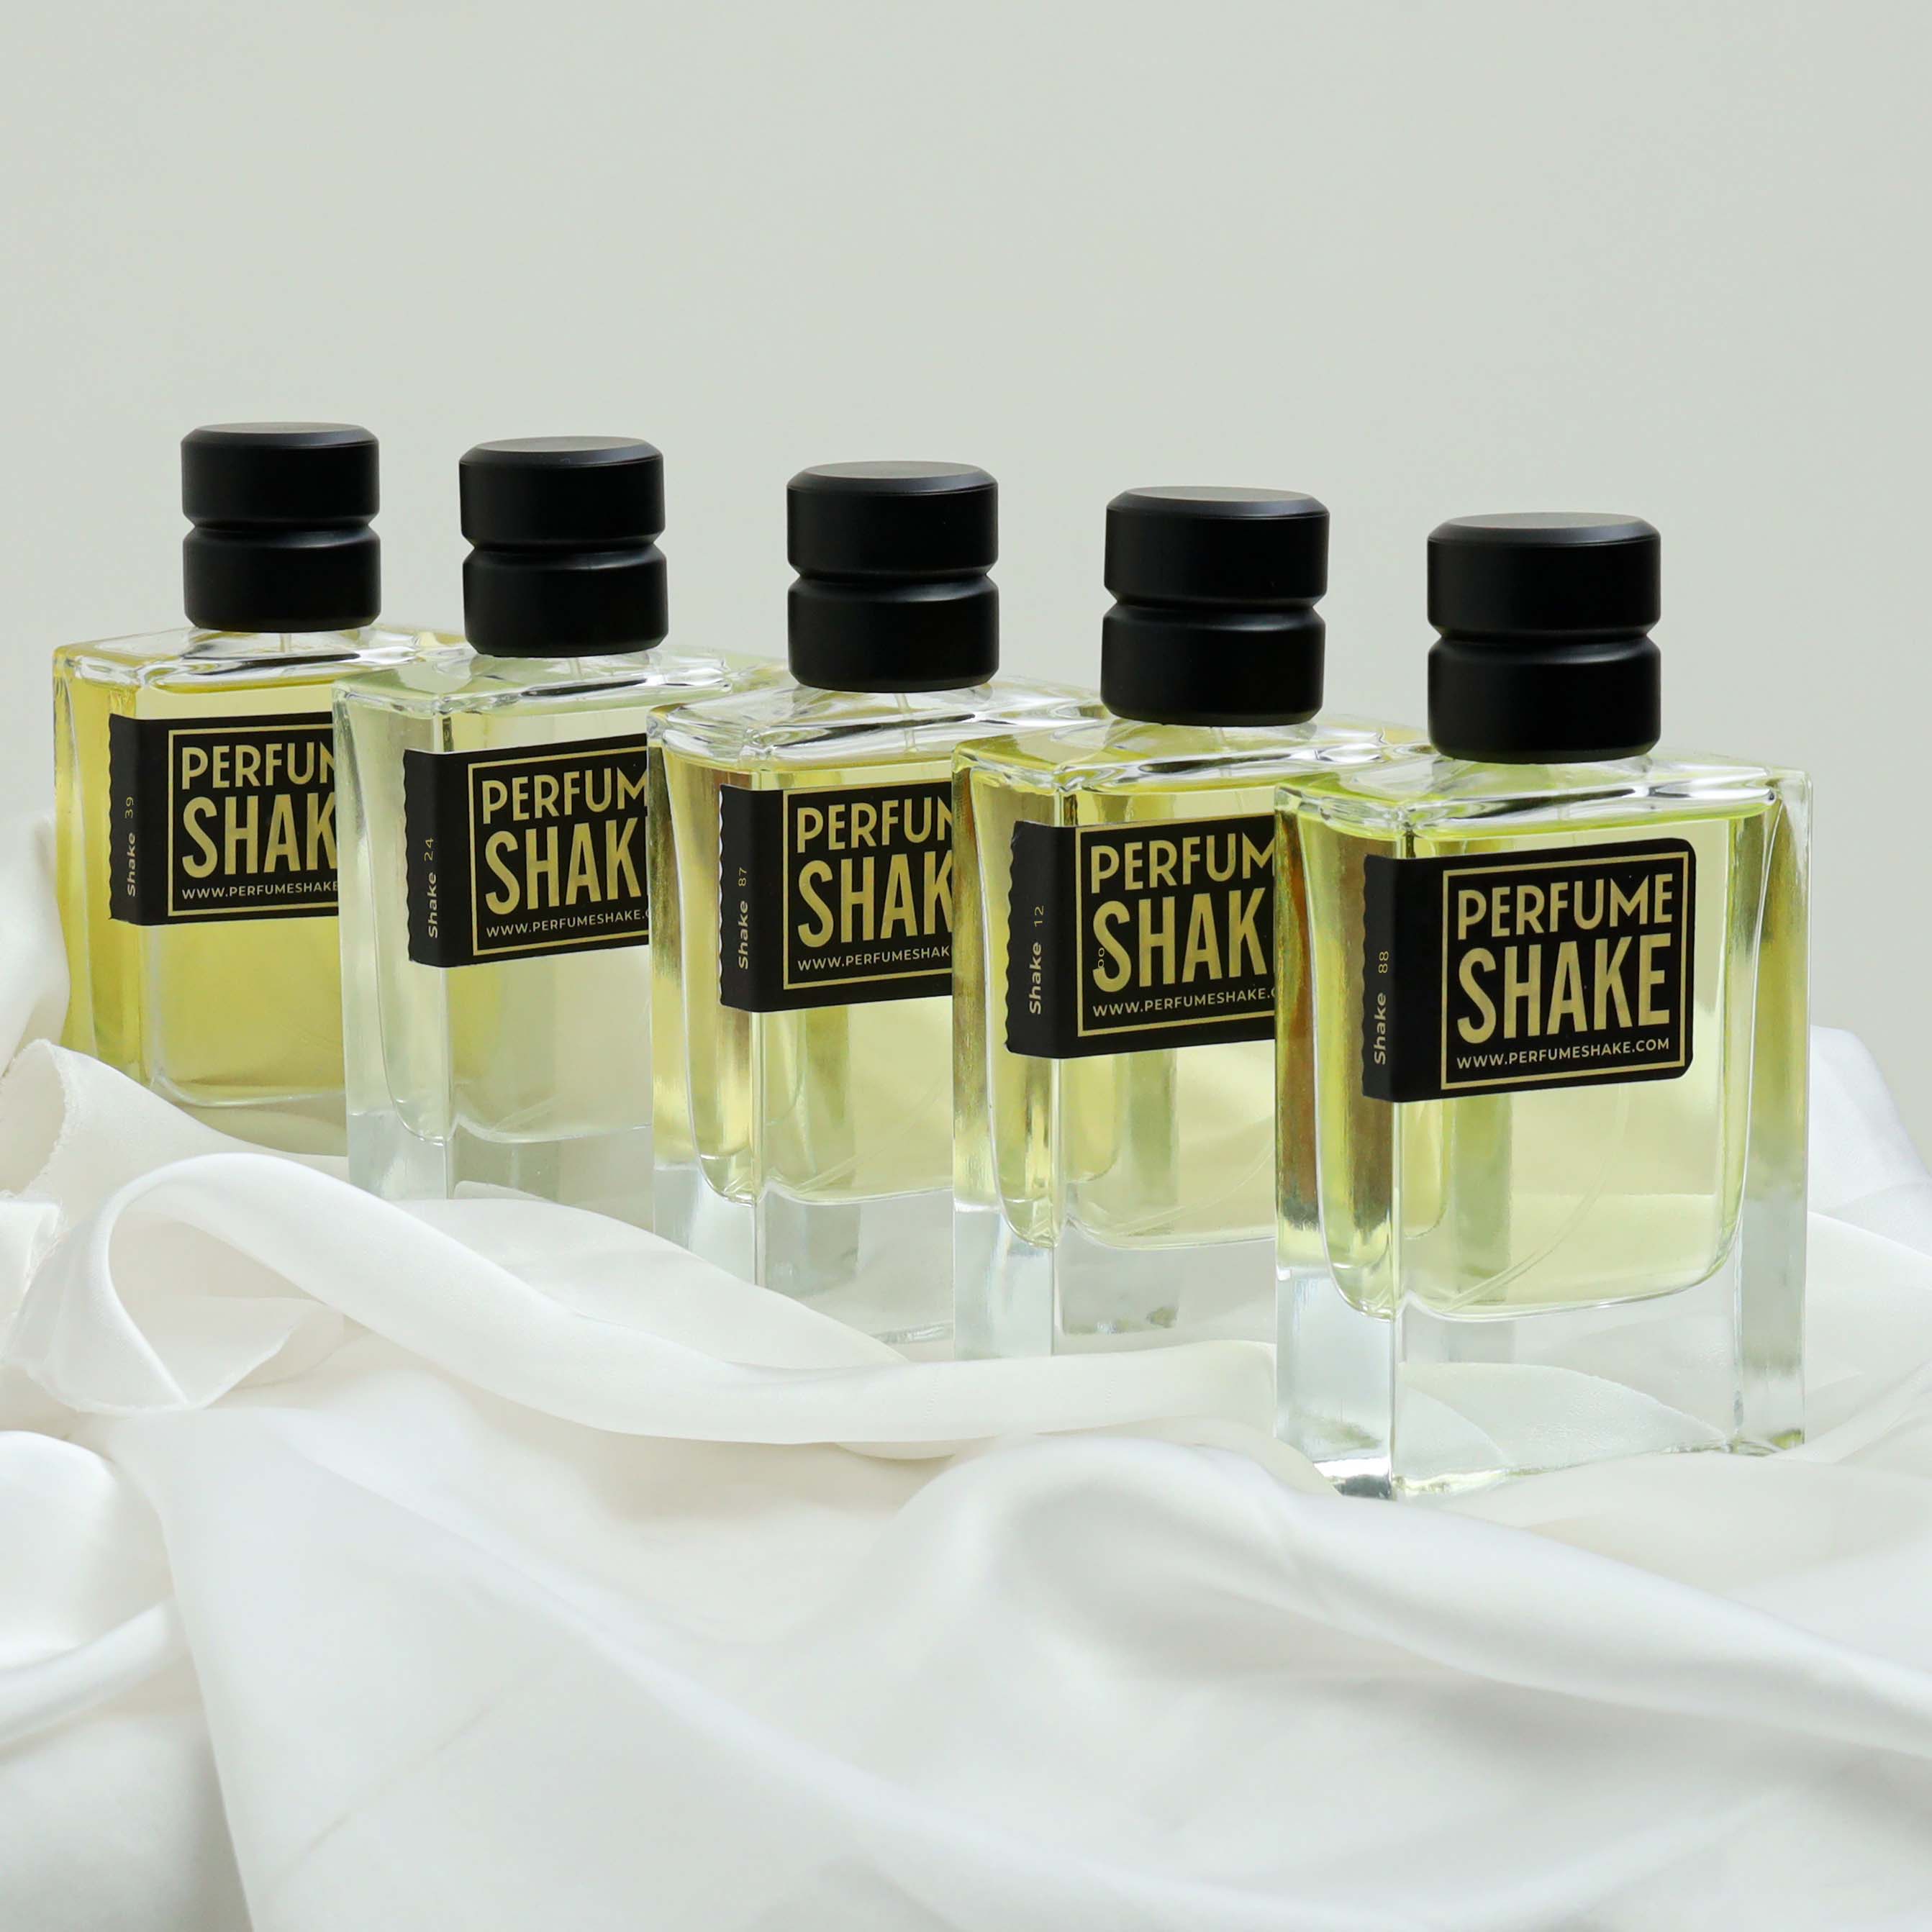 5 Best Selling Men Perfumes - Perfume Shake